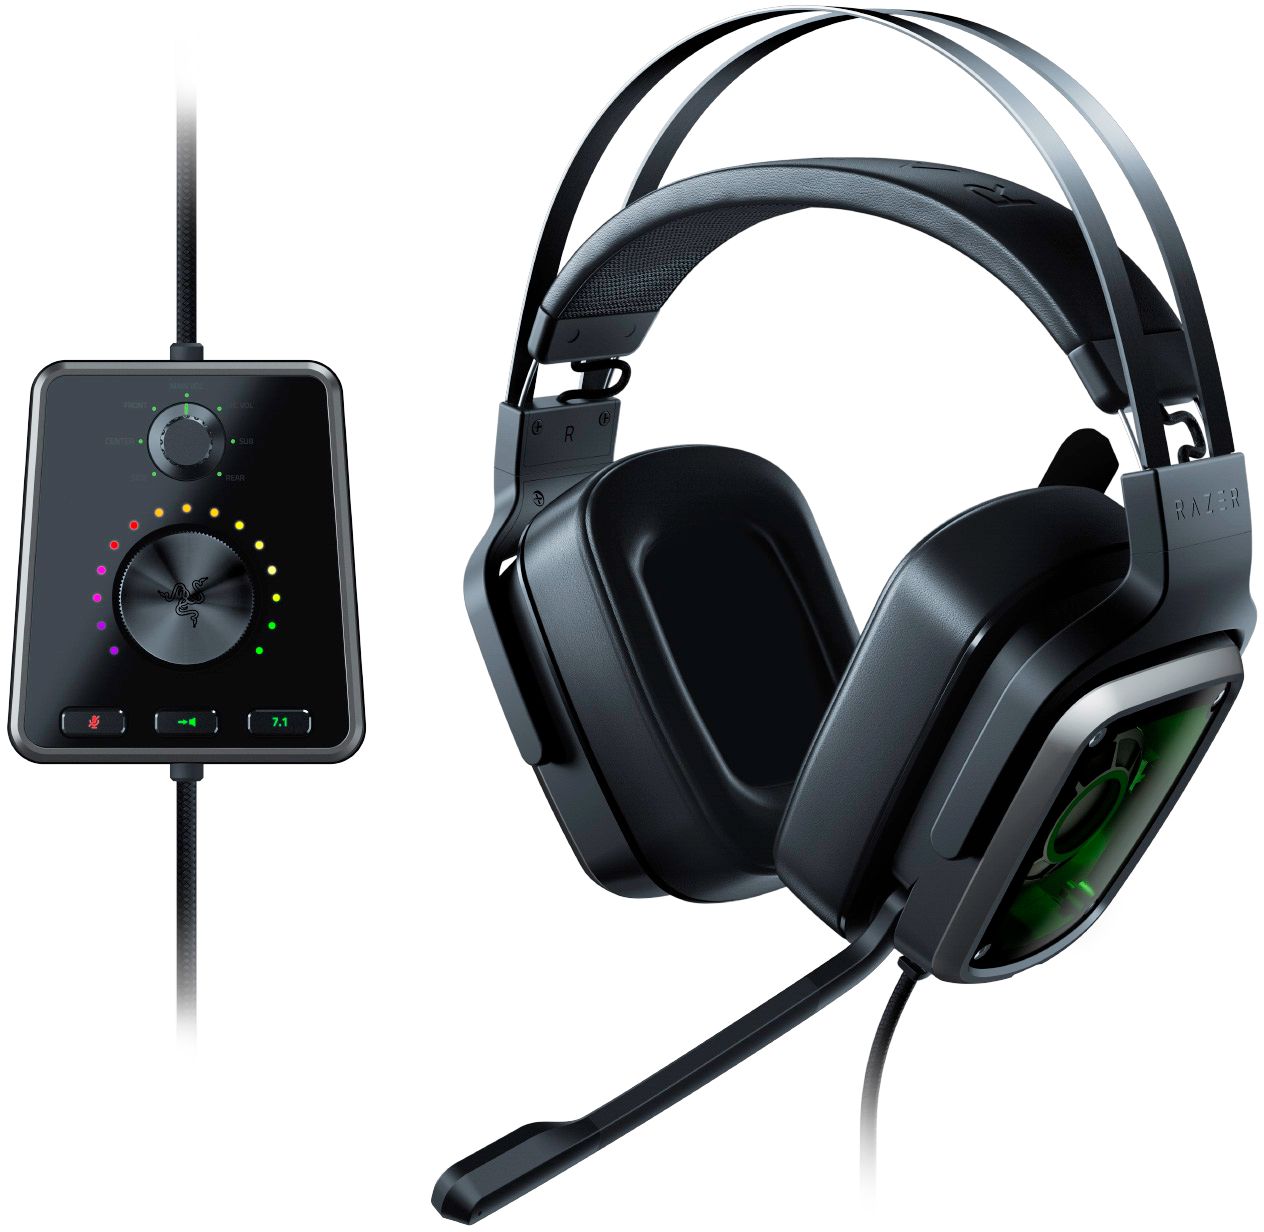 Hound undskyldning Rundt og rundt Best Buy: Razer Tiamat 7.1 V2 Wired True Surround Sound Gaming Headset for  PC Black RZ04-02070100-R3U1